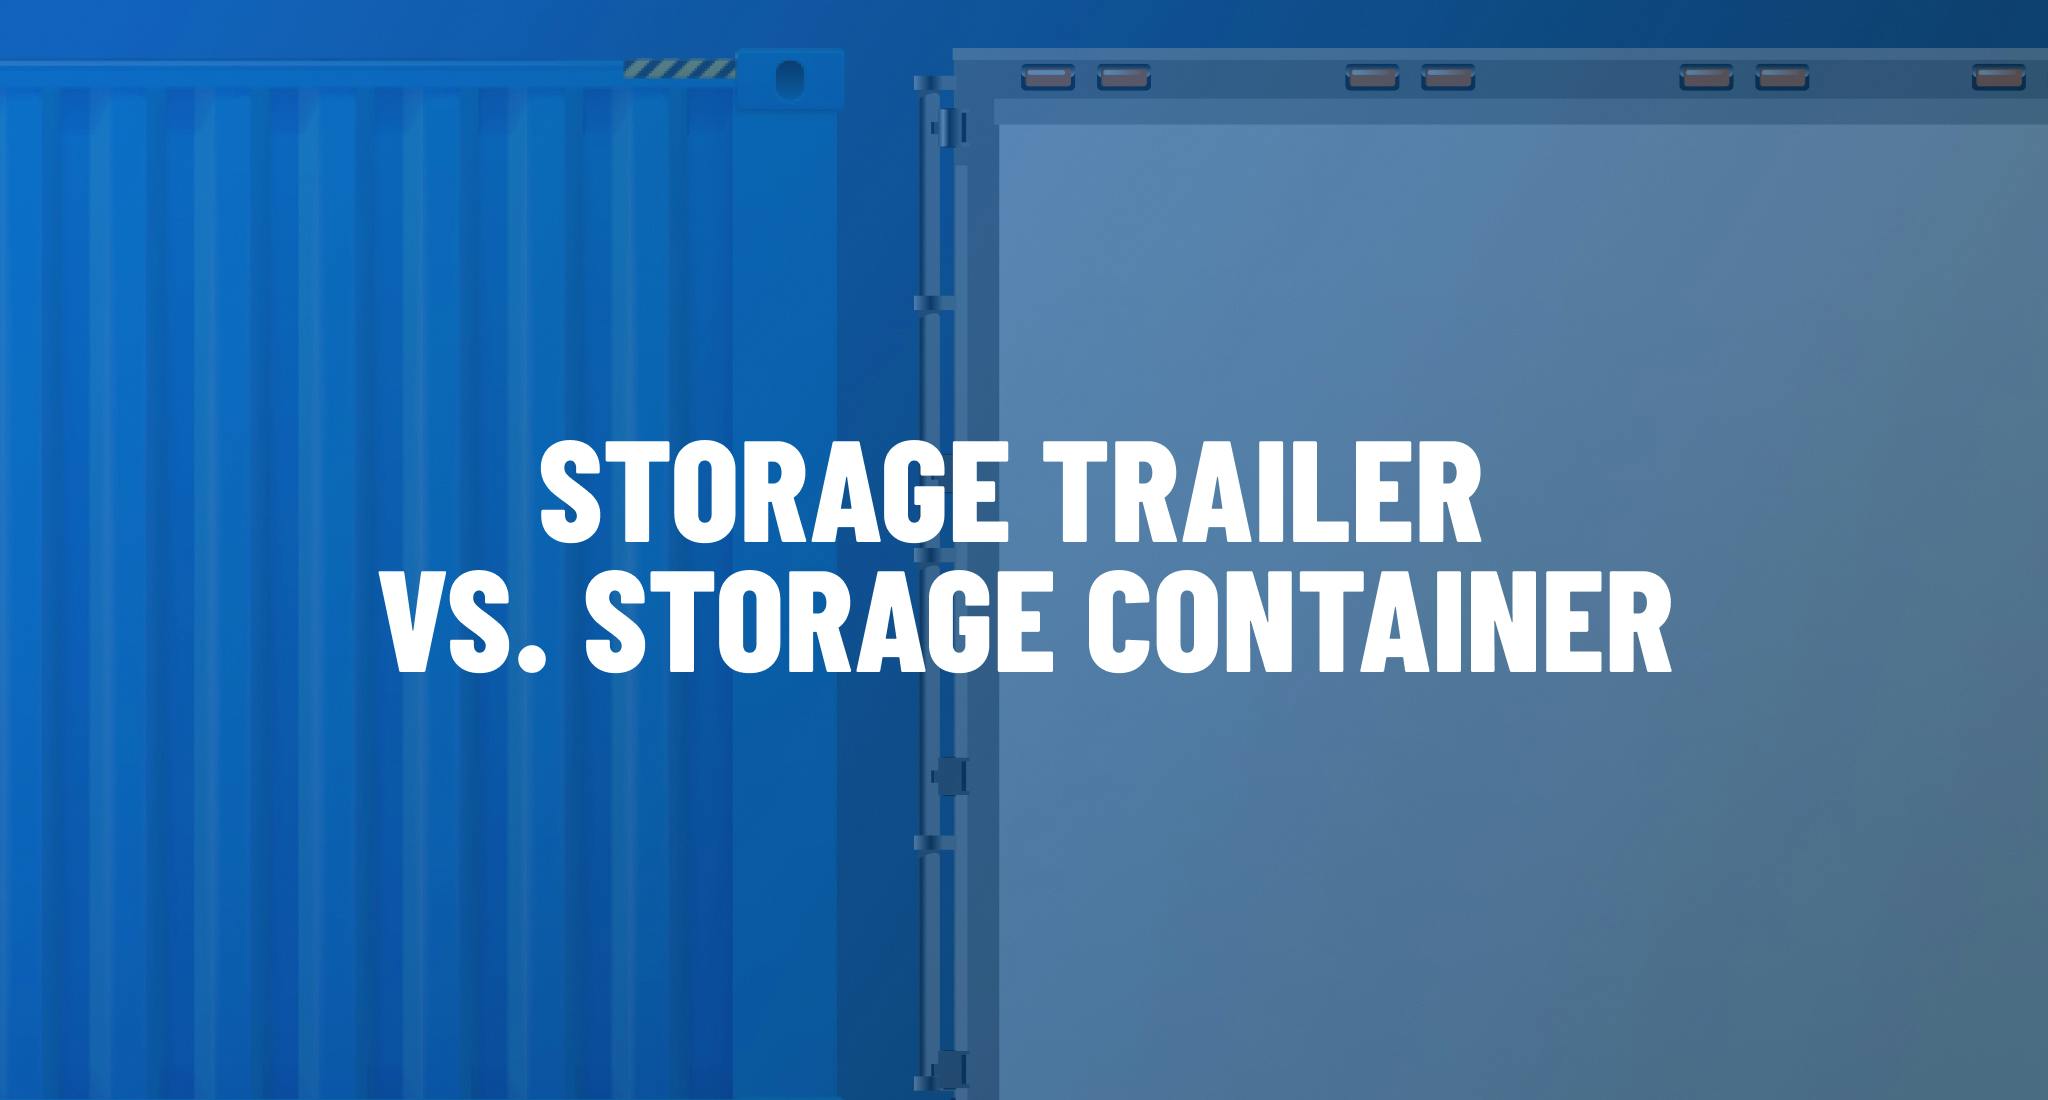 Storage trailer vs. storage container. 